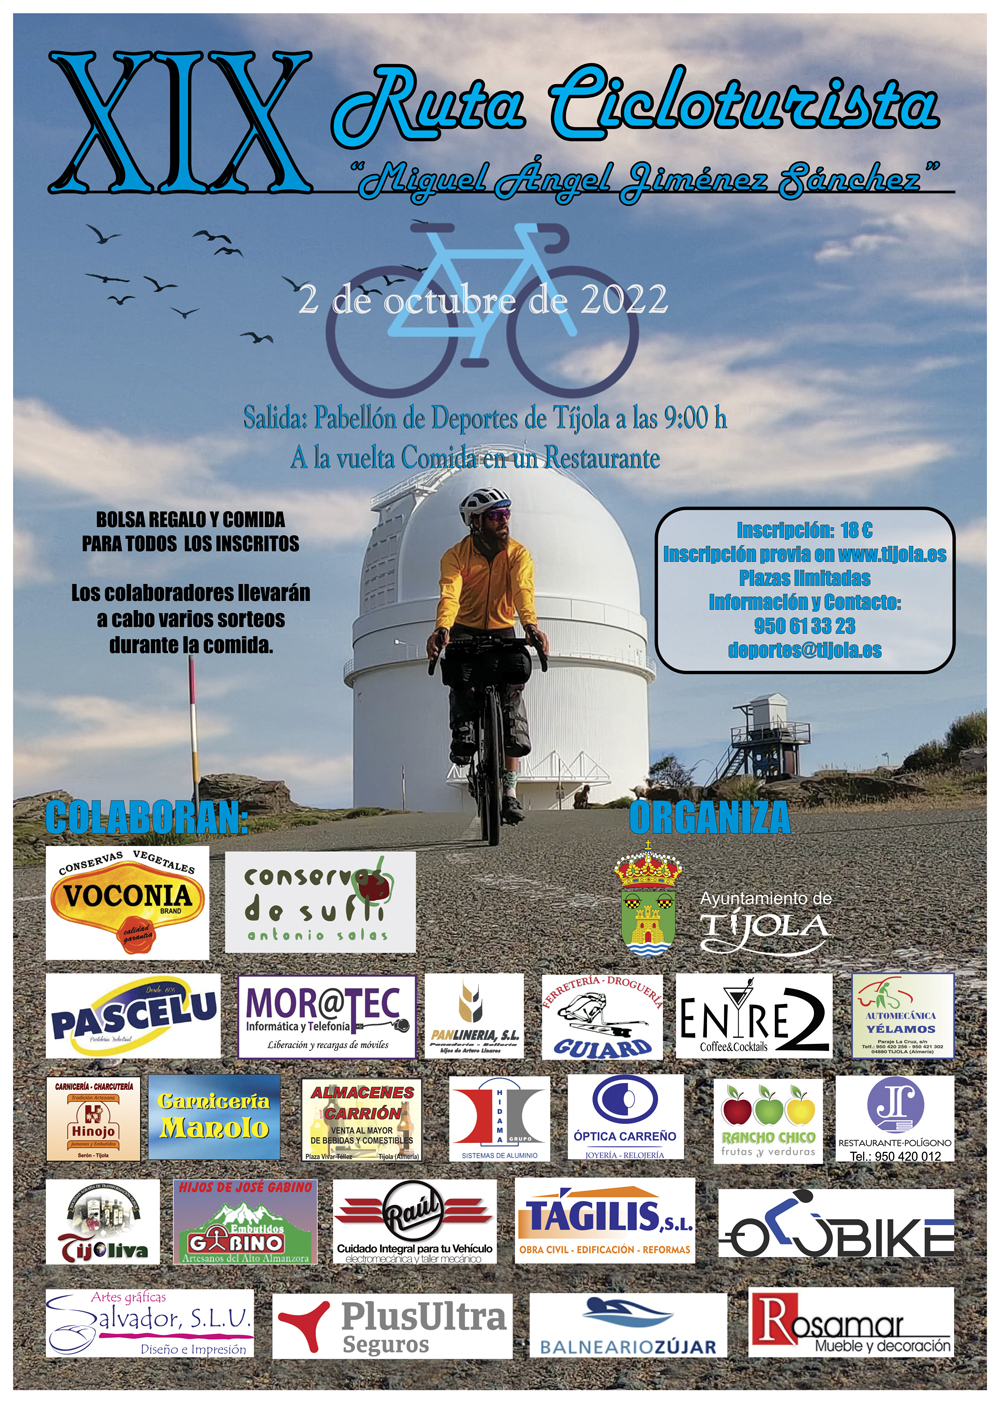 Imagen del Cartel de la XIX Ruta Cicloturista Miguel Ángel Jiménez Sánchez. Imagen de un ciclista con una cúpula de Calar Alto al fondo del cartel.